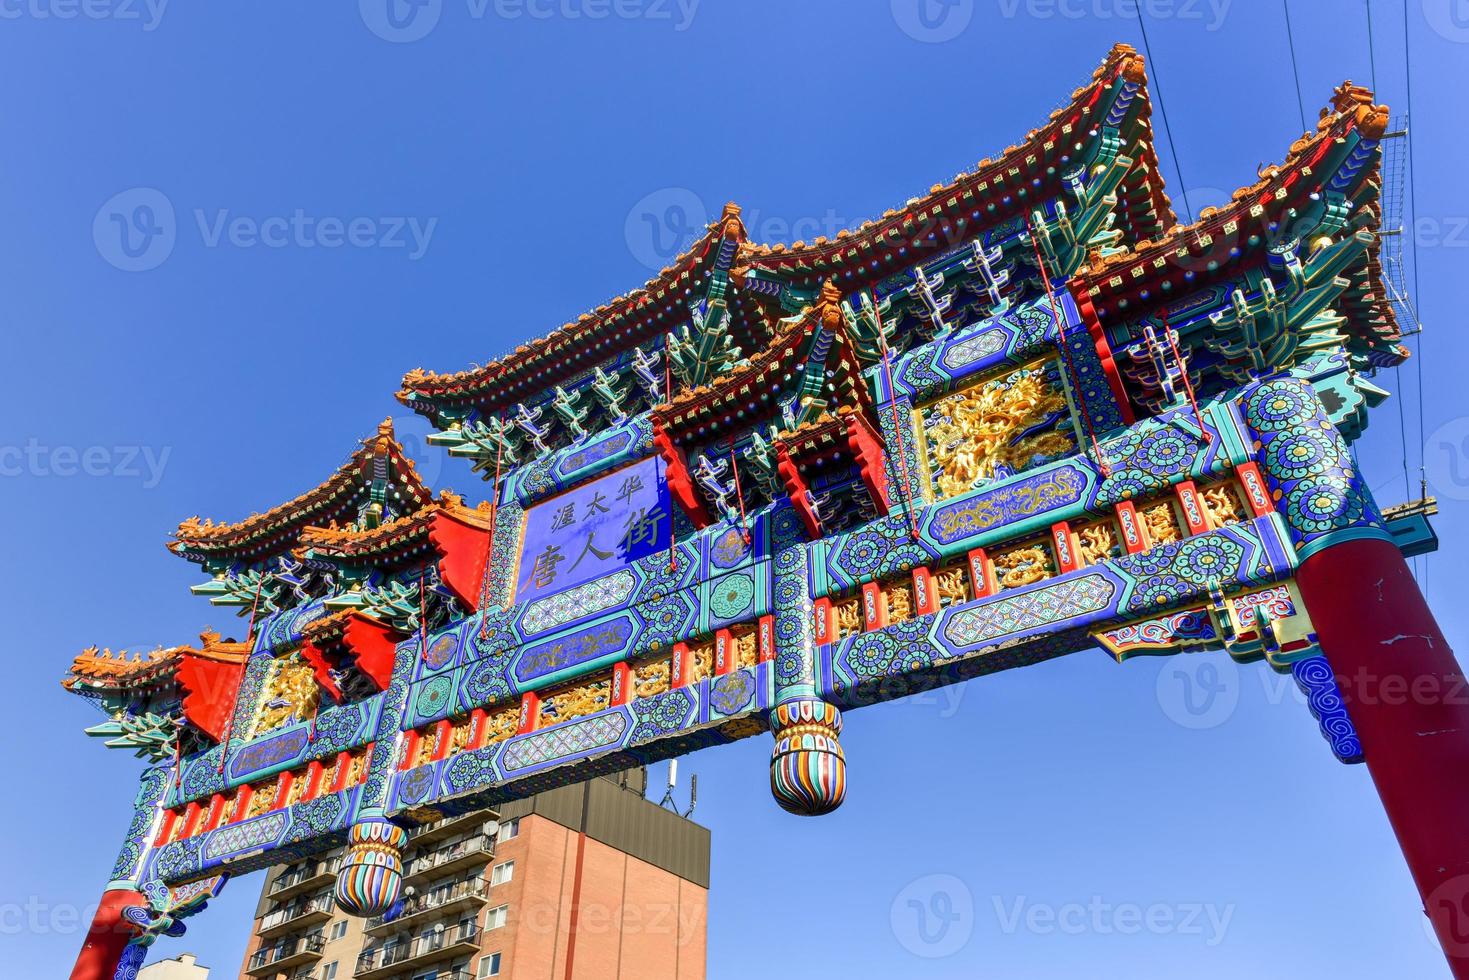 de kunglig kejserlig båge i Ottawa, Kanada. den märken de ingång av de china område i Ottawa. rik i symbolism, de Centrum blå panel på de båge är kinesisk tecken ordspråk ottawa chinatown. foto